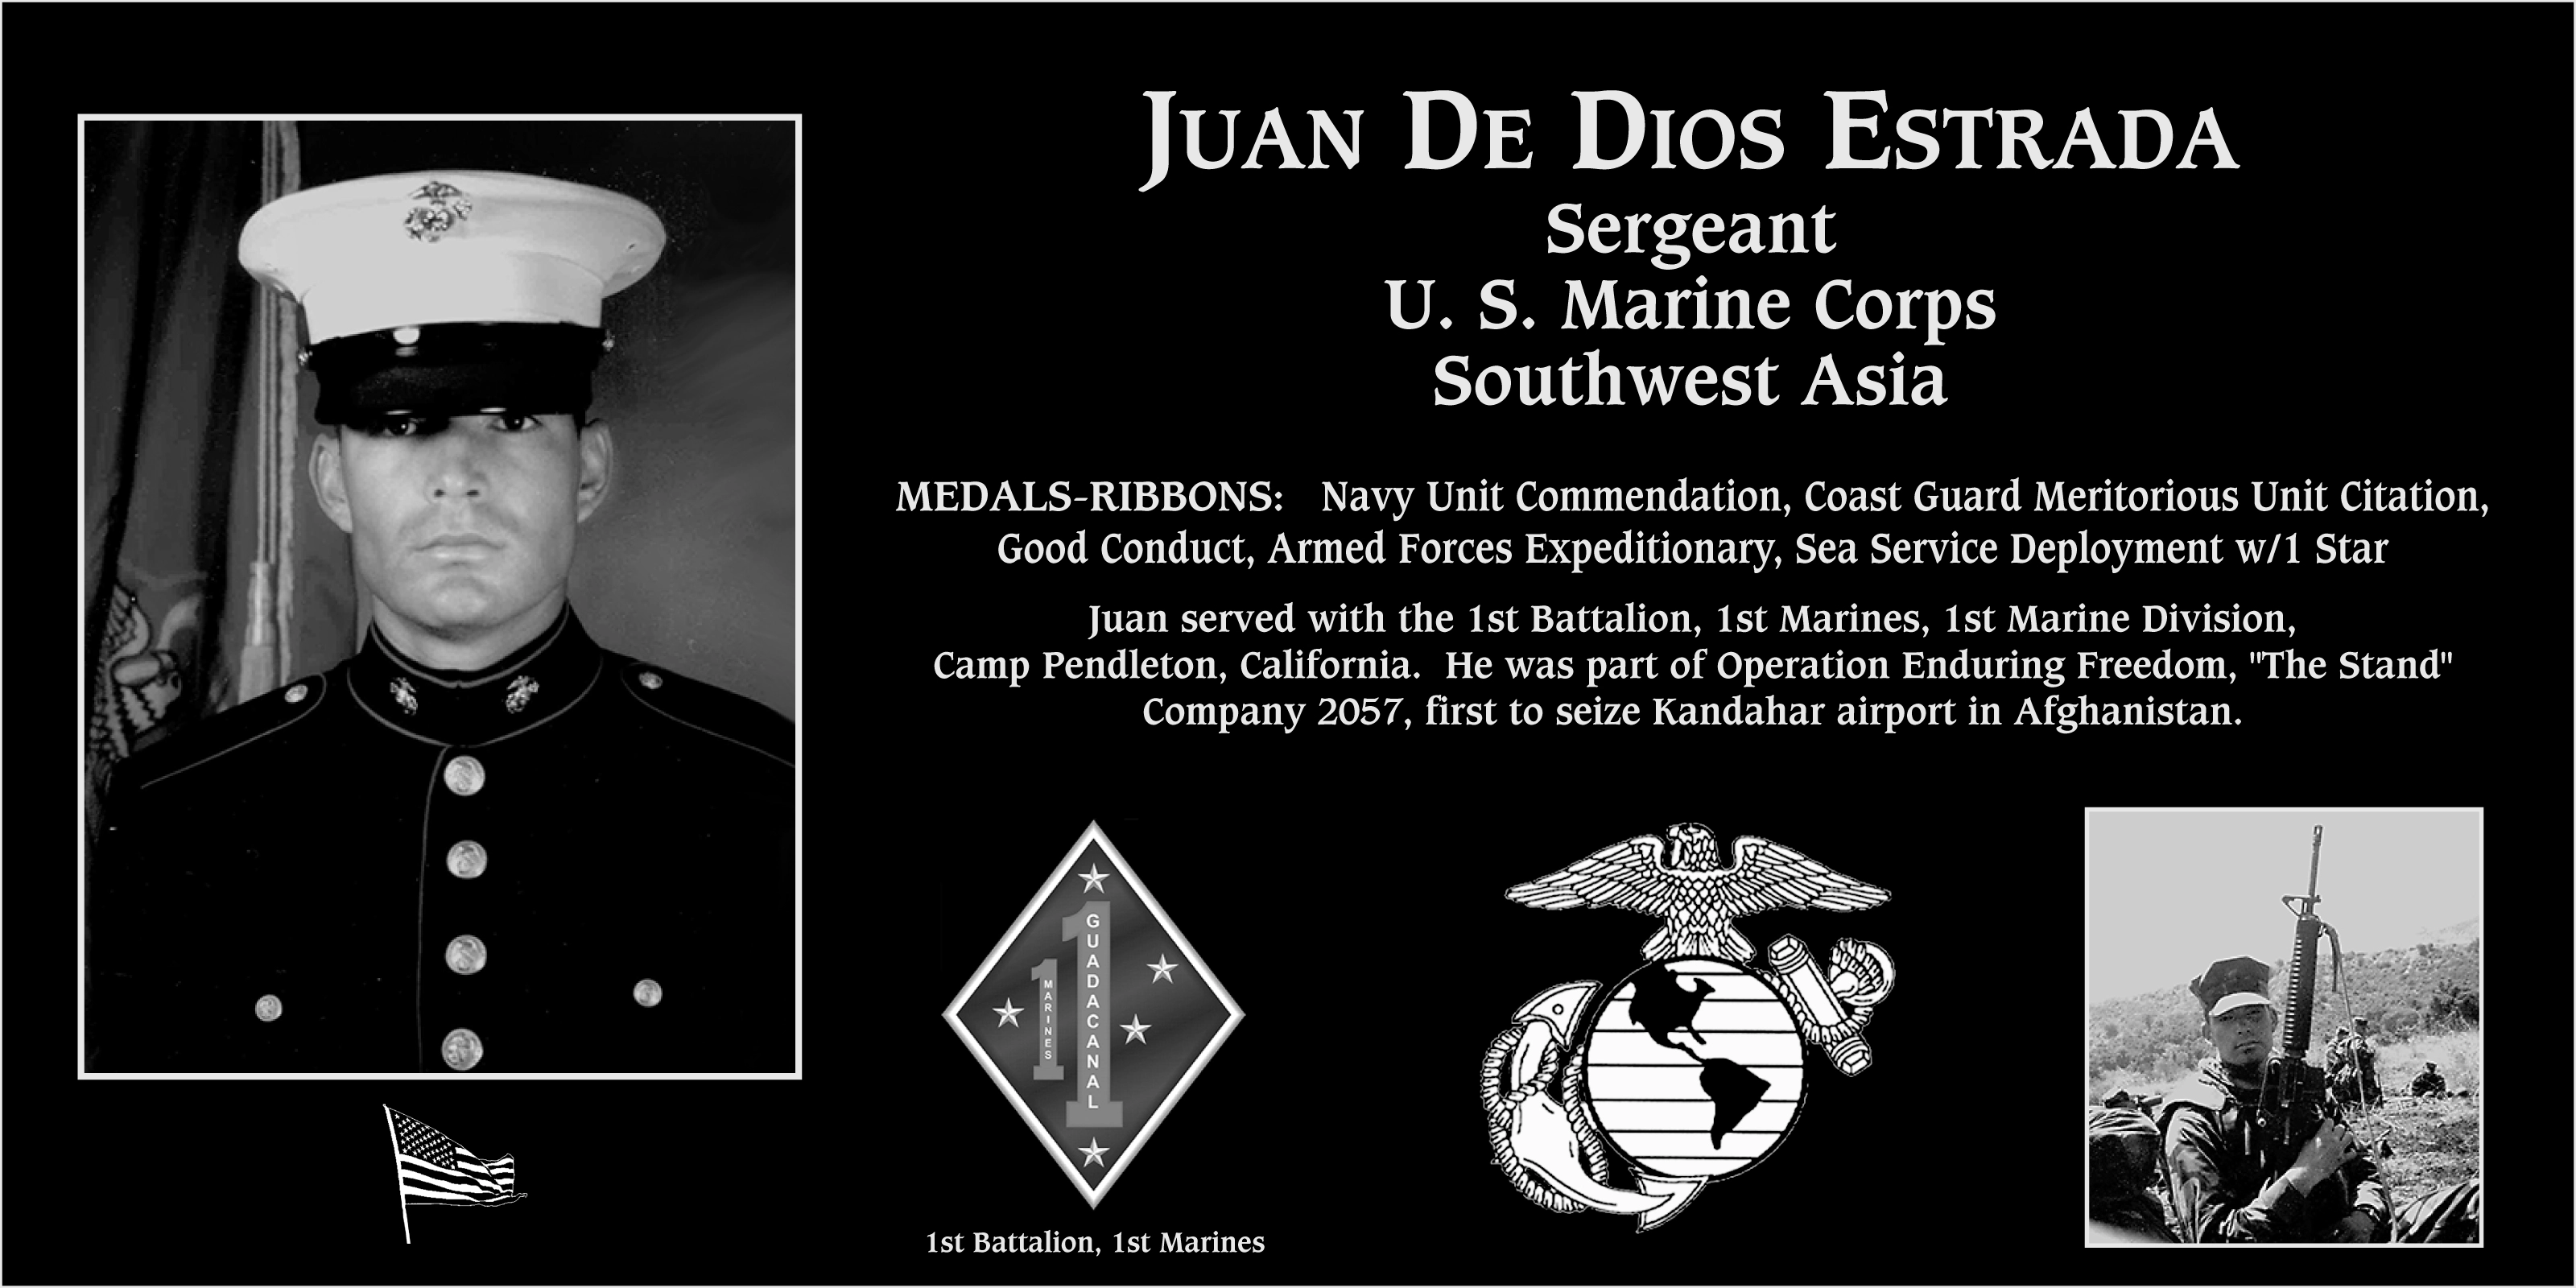 Juan De Dios Estrada, jr